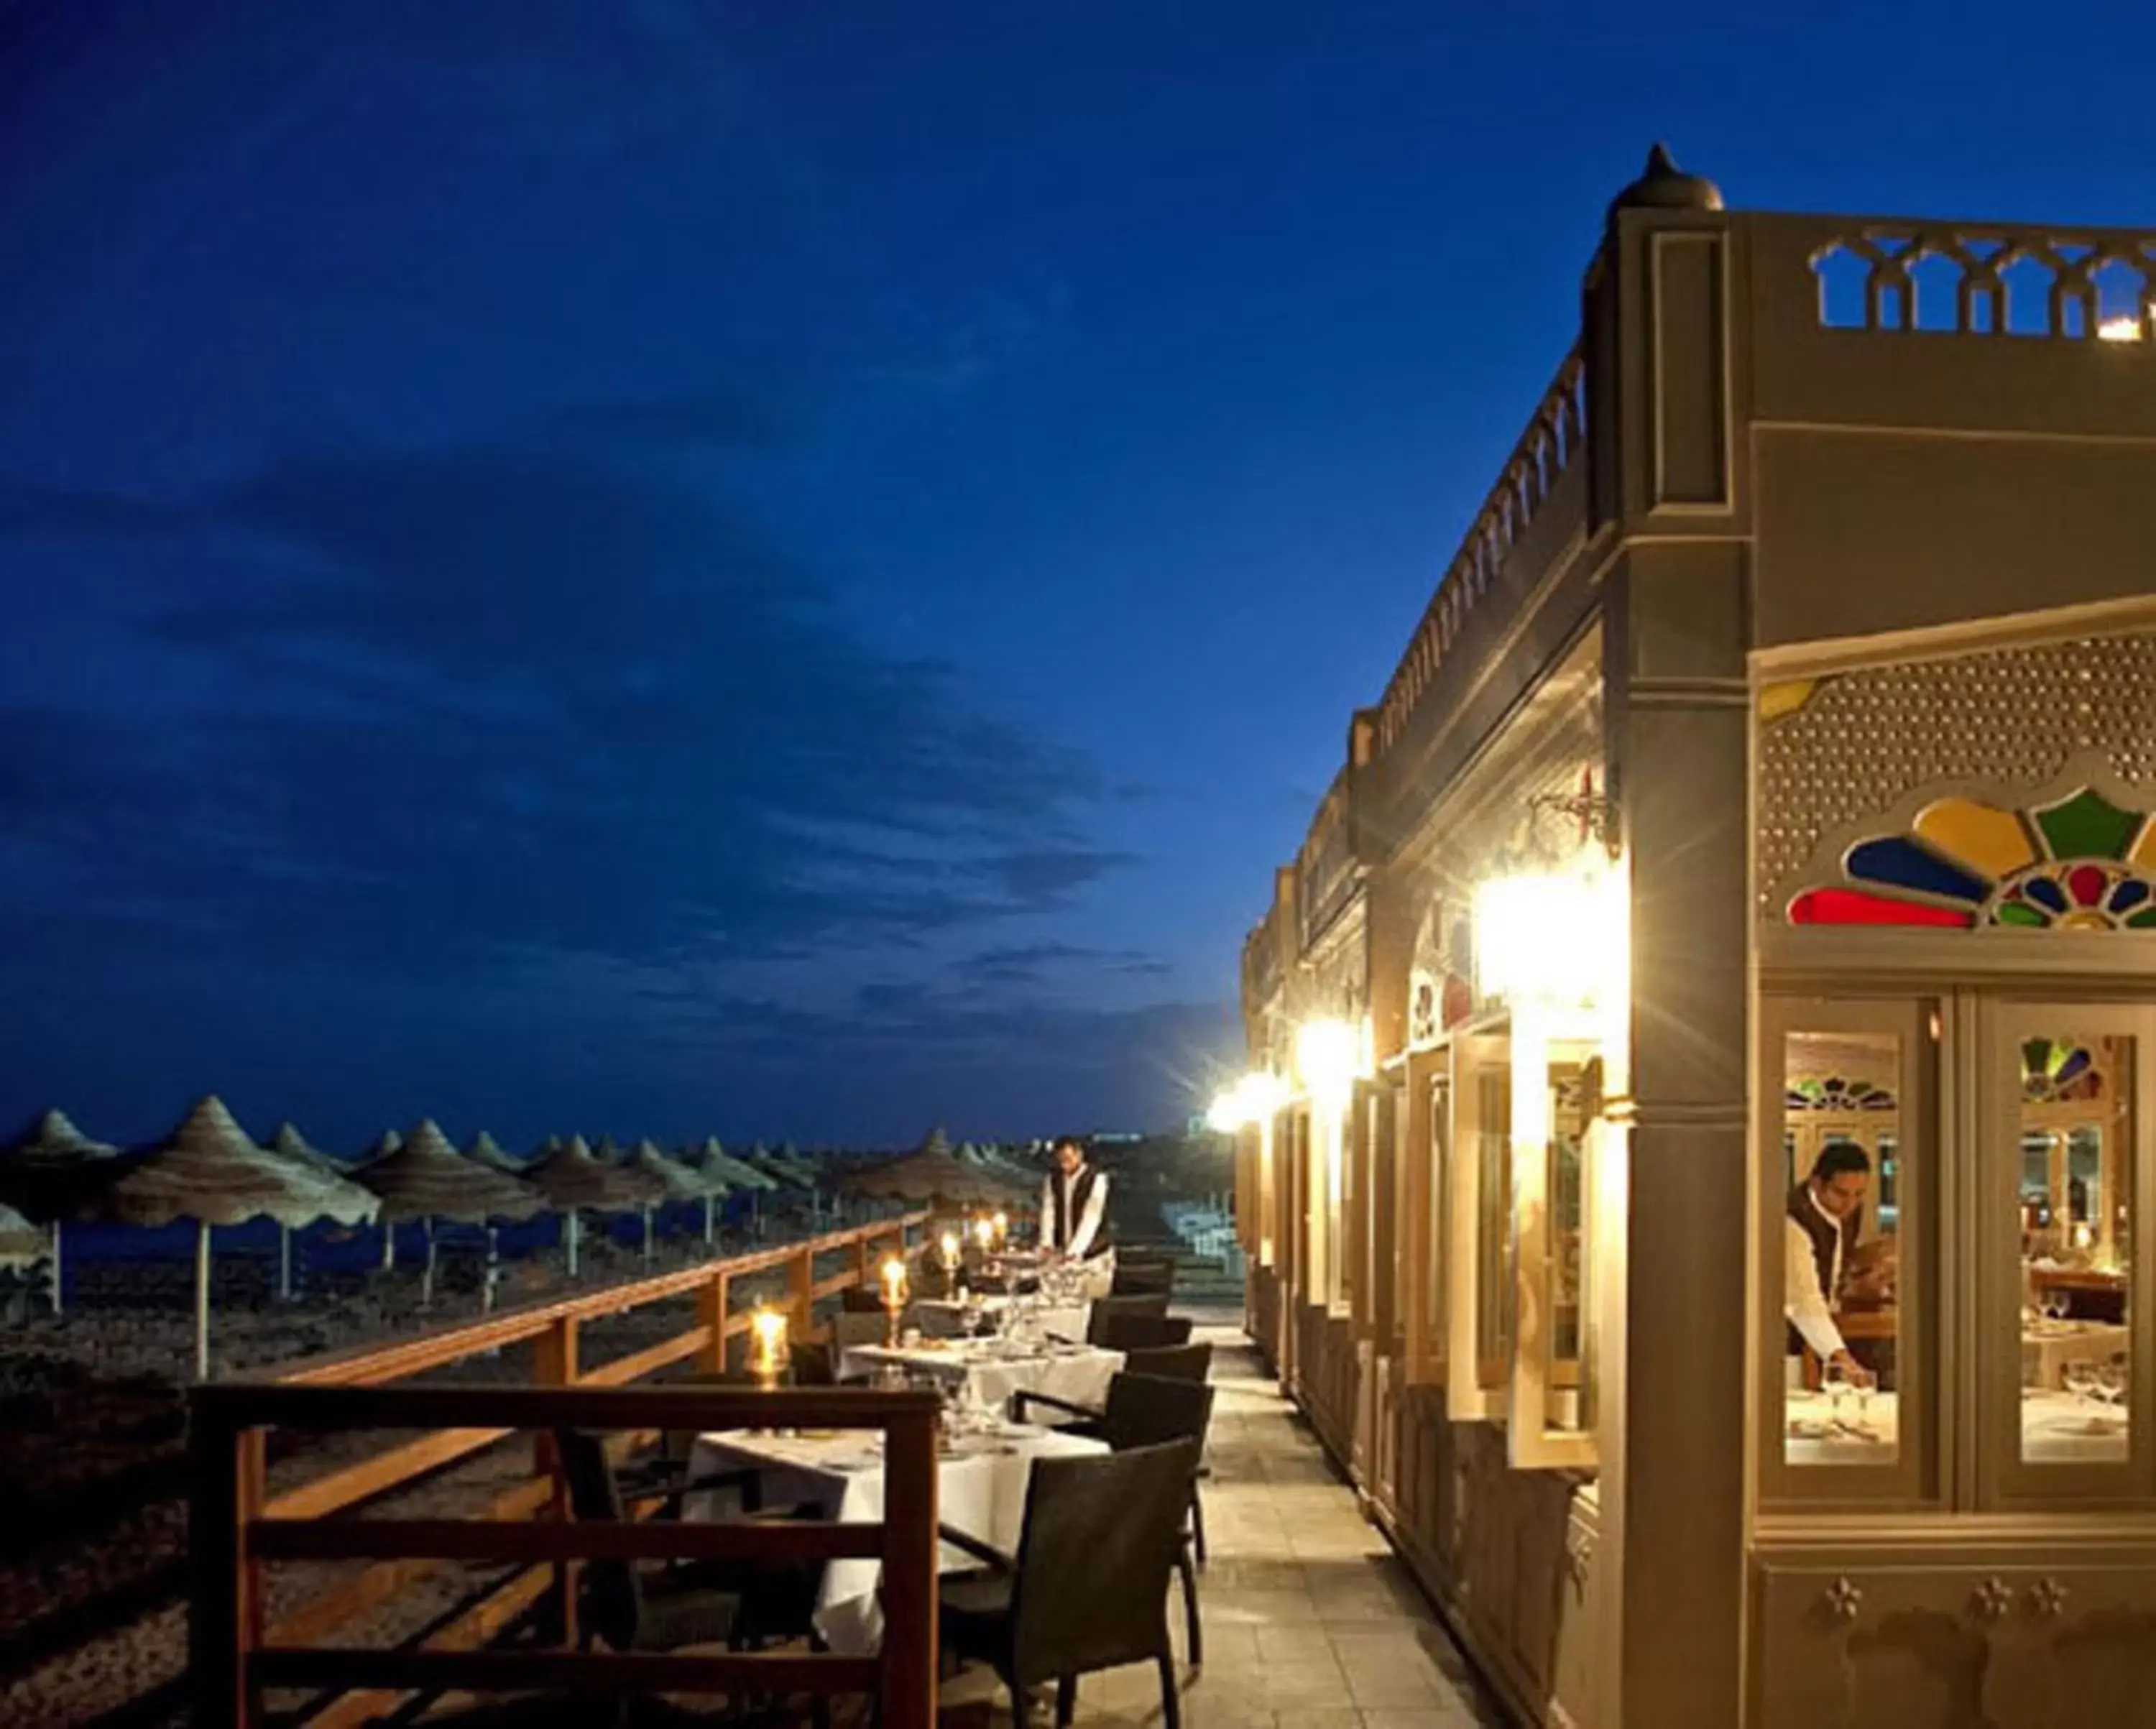 Staff, Patio/Outdoor Area in Baron Resort Sharm El Sheikh